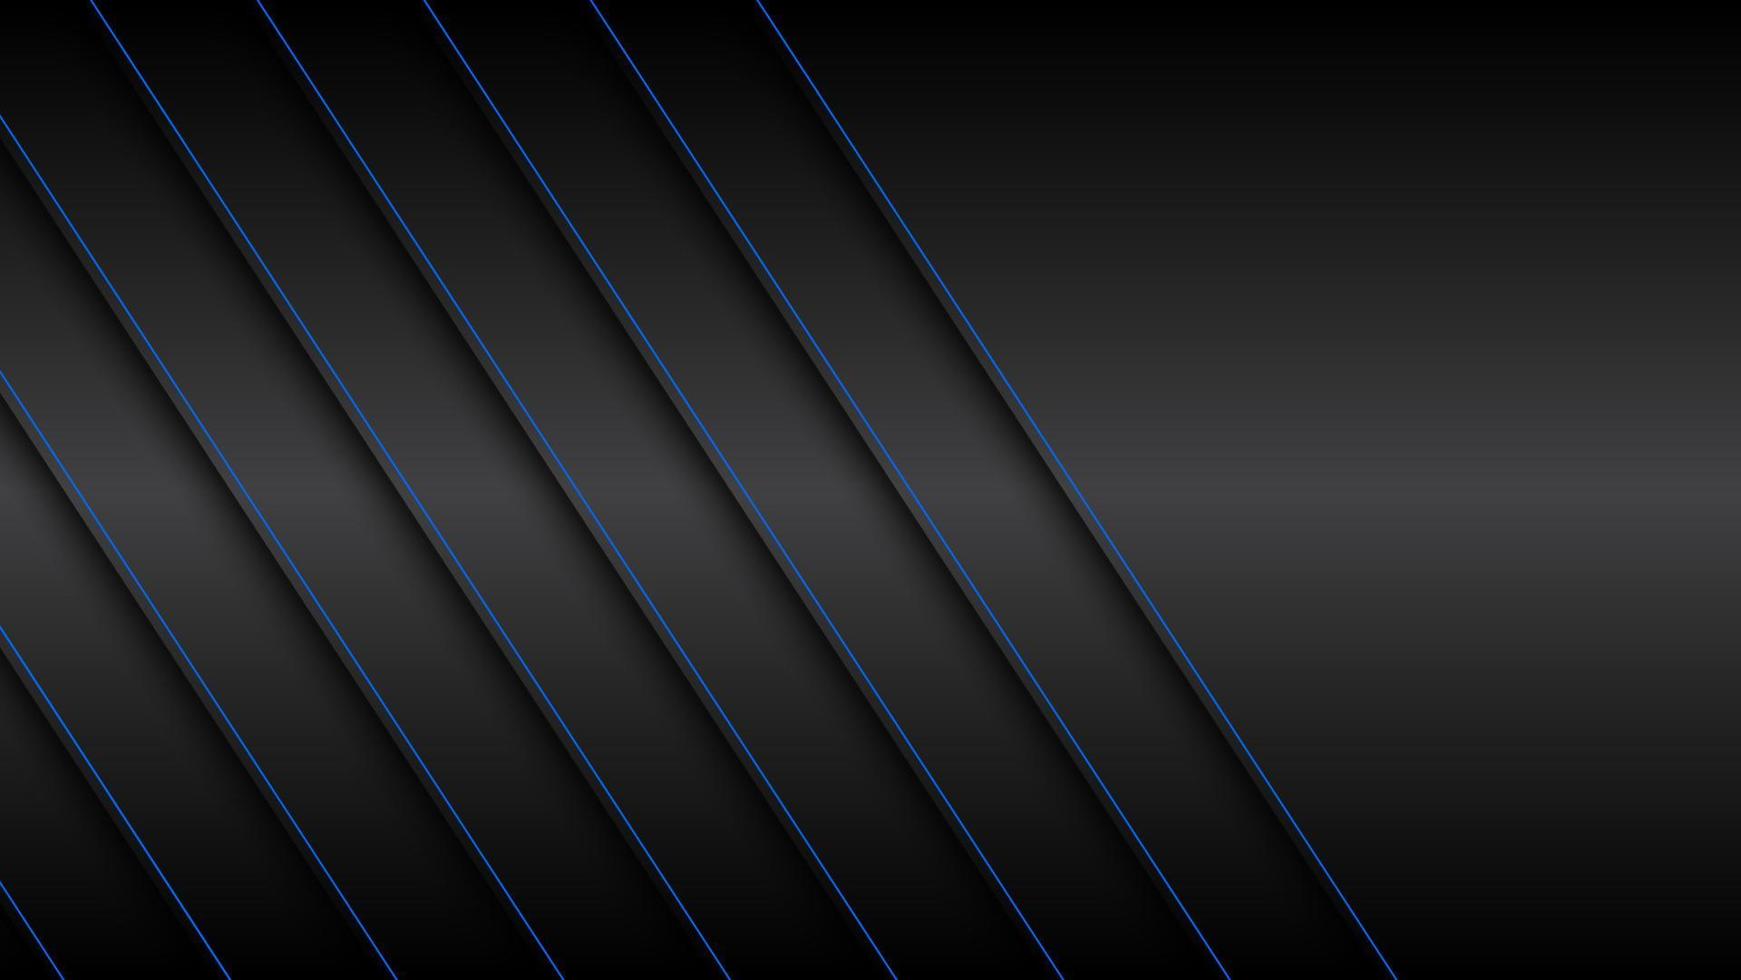 fundo de material design preto e azul com linhas diagonais azuis, ilustração em vetor widescreen abstrato moderno